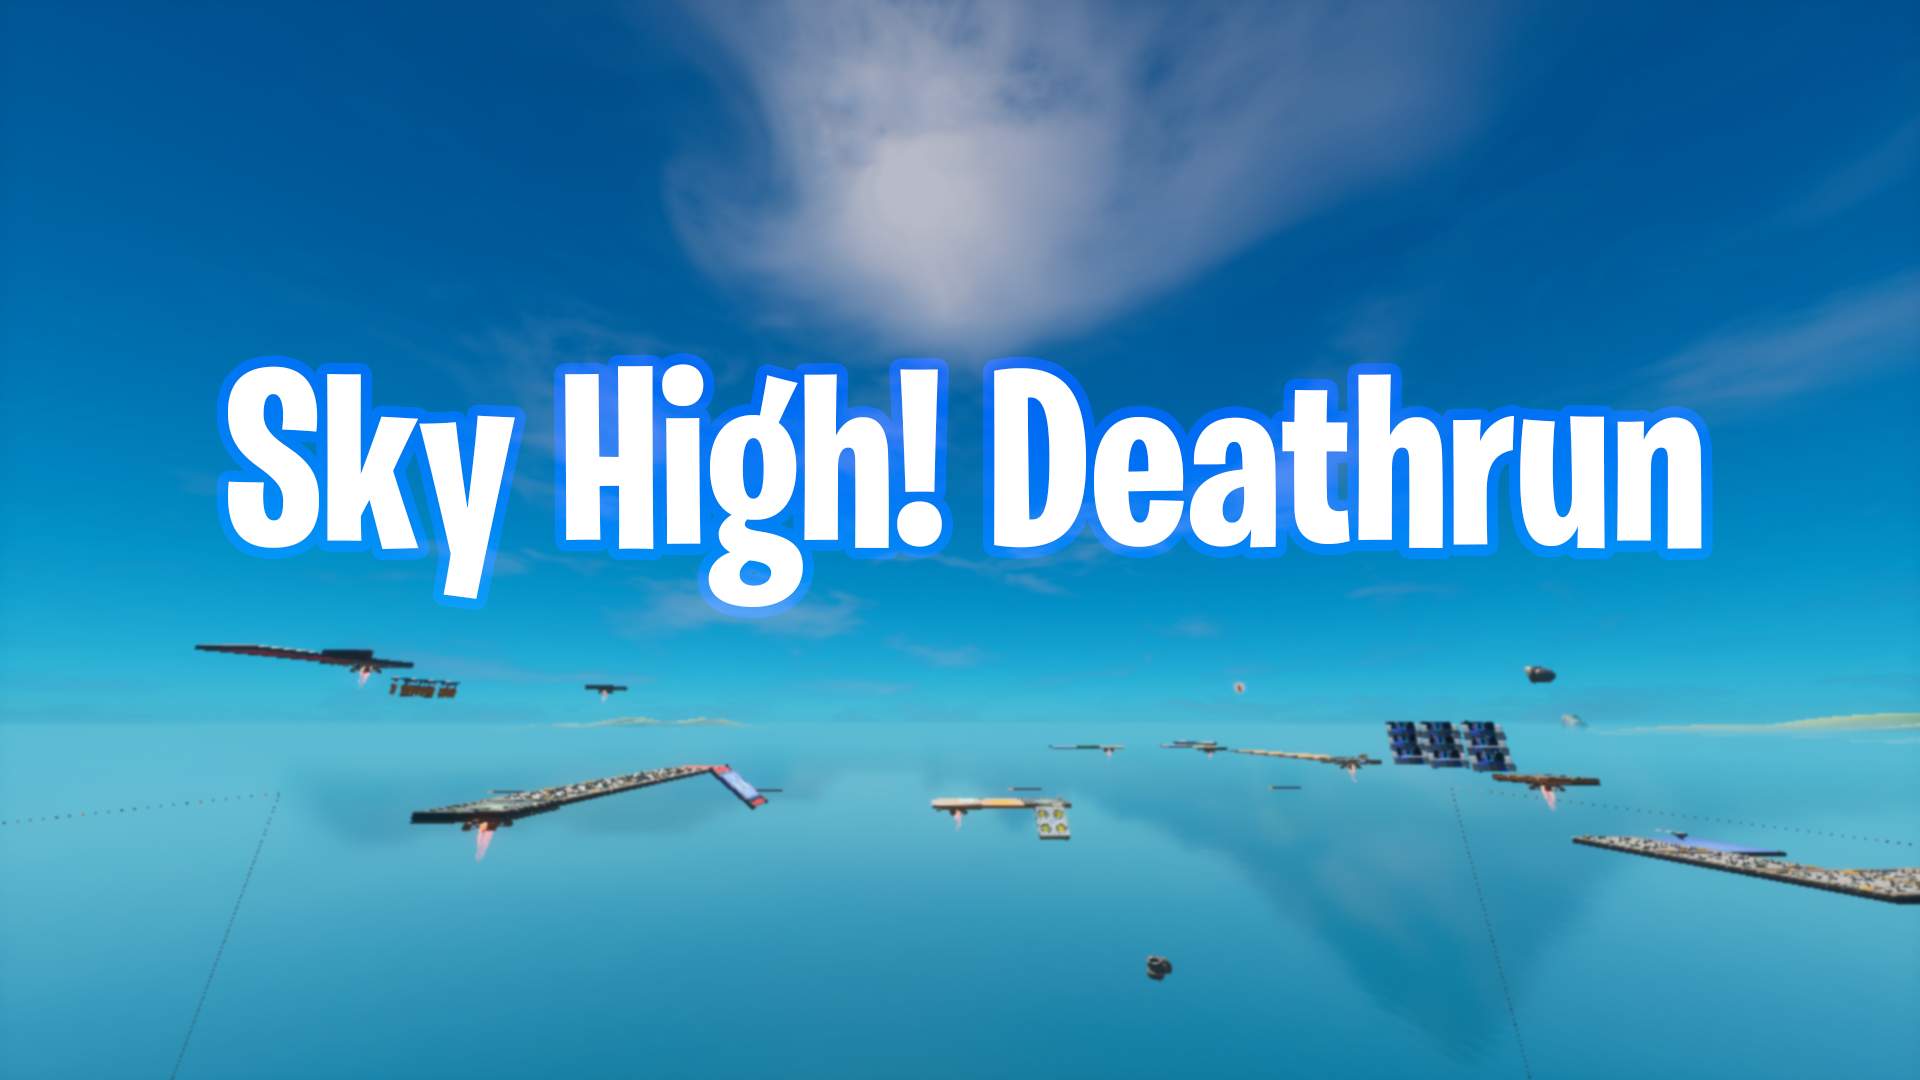 SKY HIGH! DEATHRUN